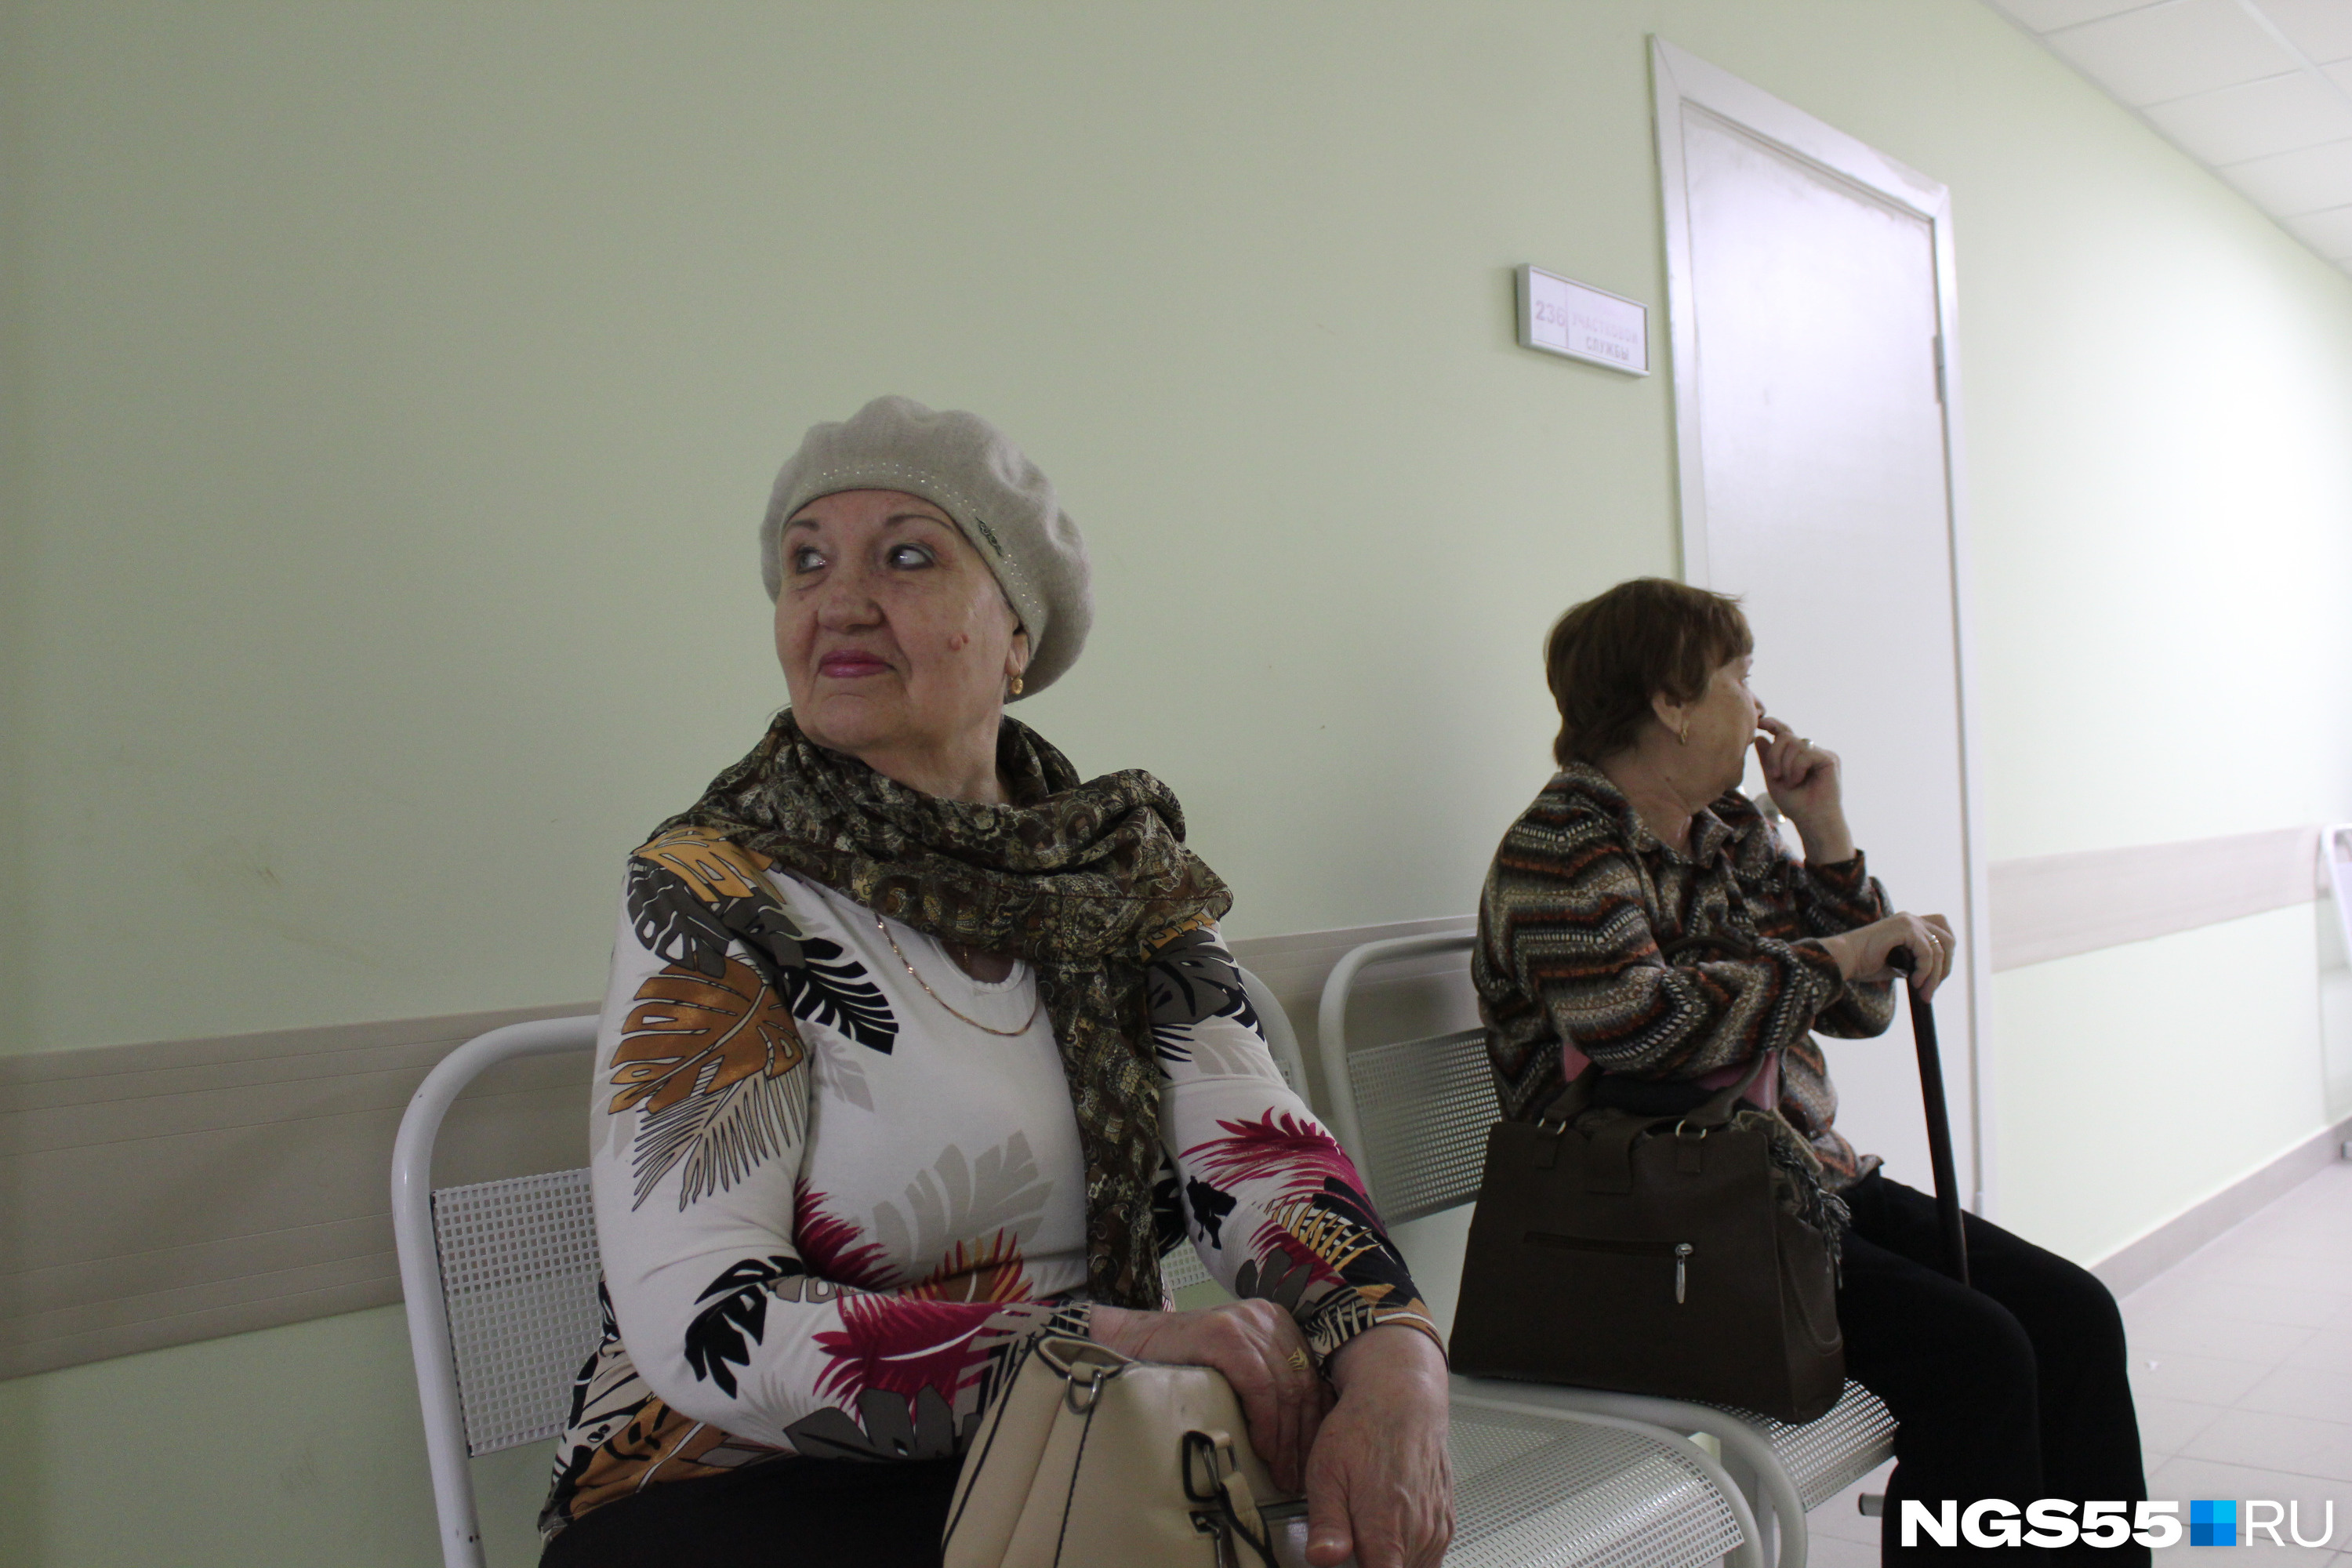 Пенсионерка Зоя Чикишева не сразу нашла свой кабинет, но на больницу не нарадуется